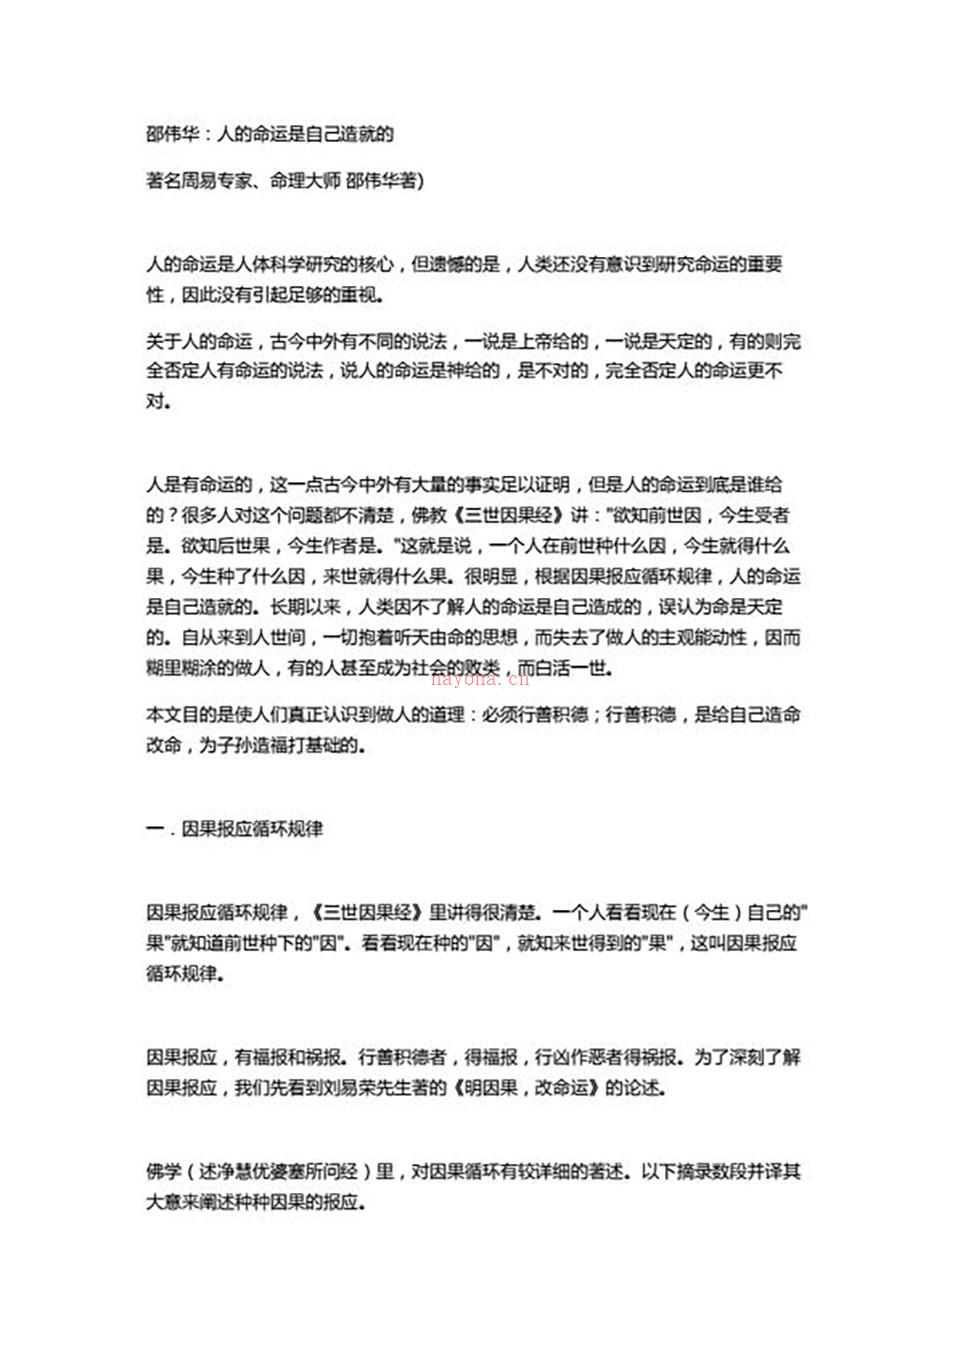 邵伟华-人的命运是自己造就的12页.pdf 百度网盘资源